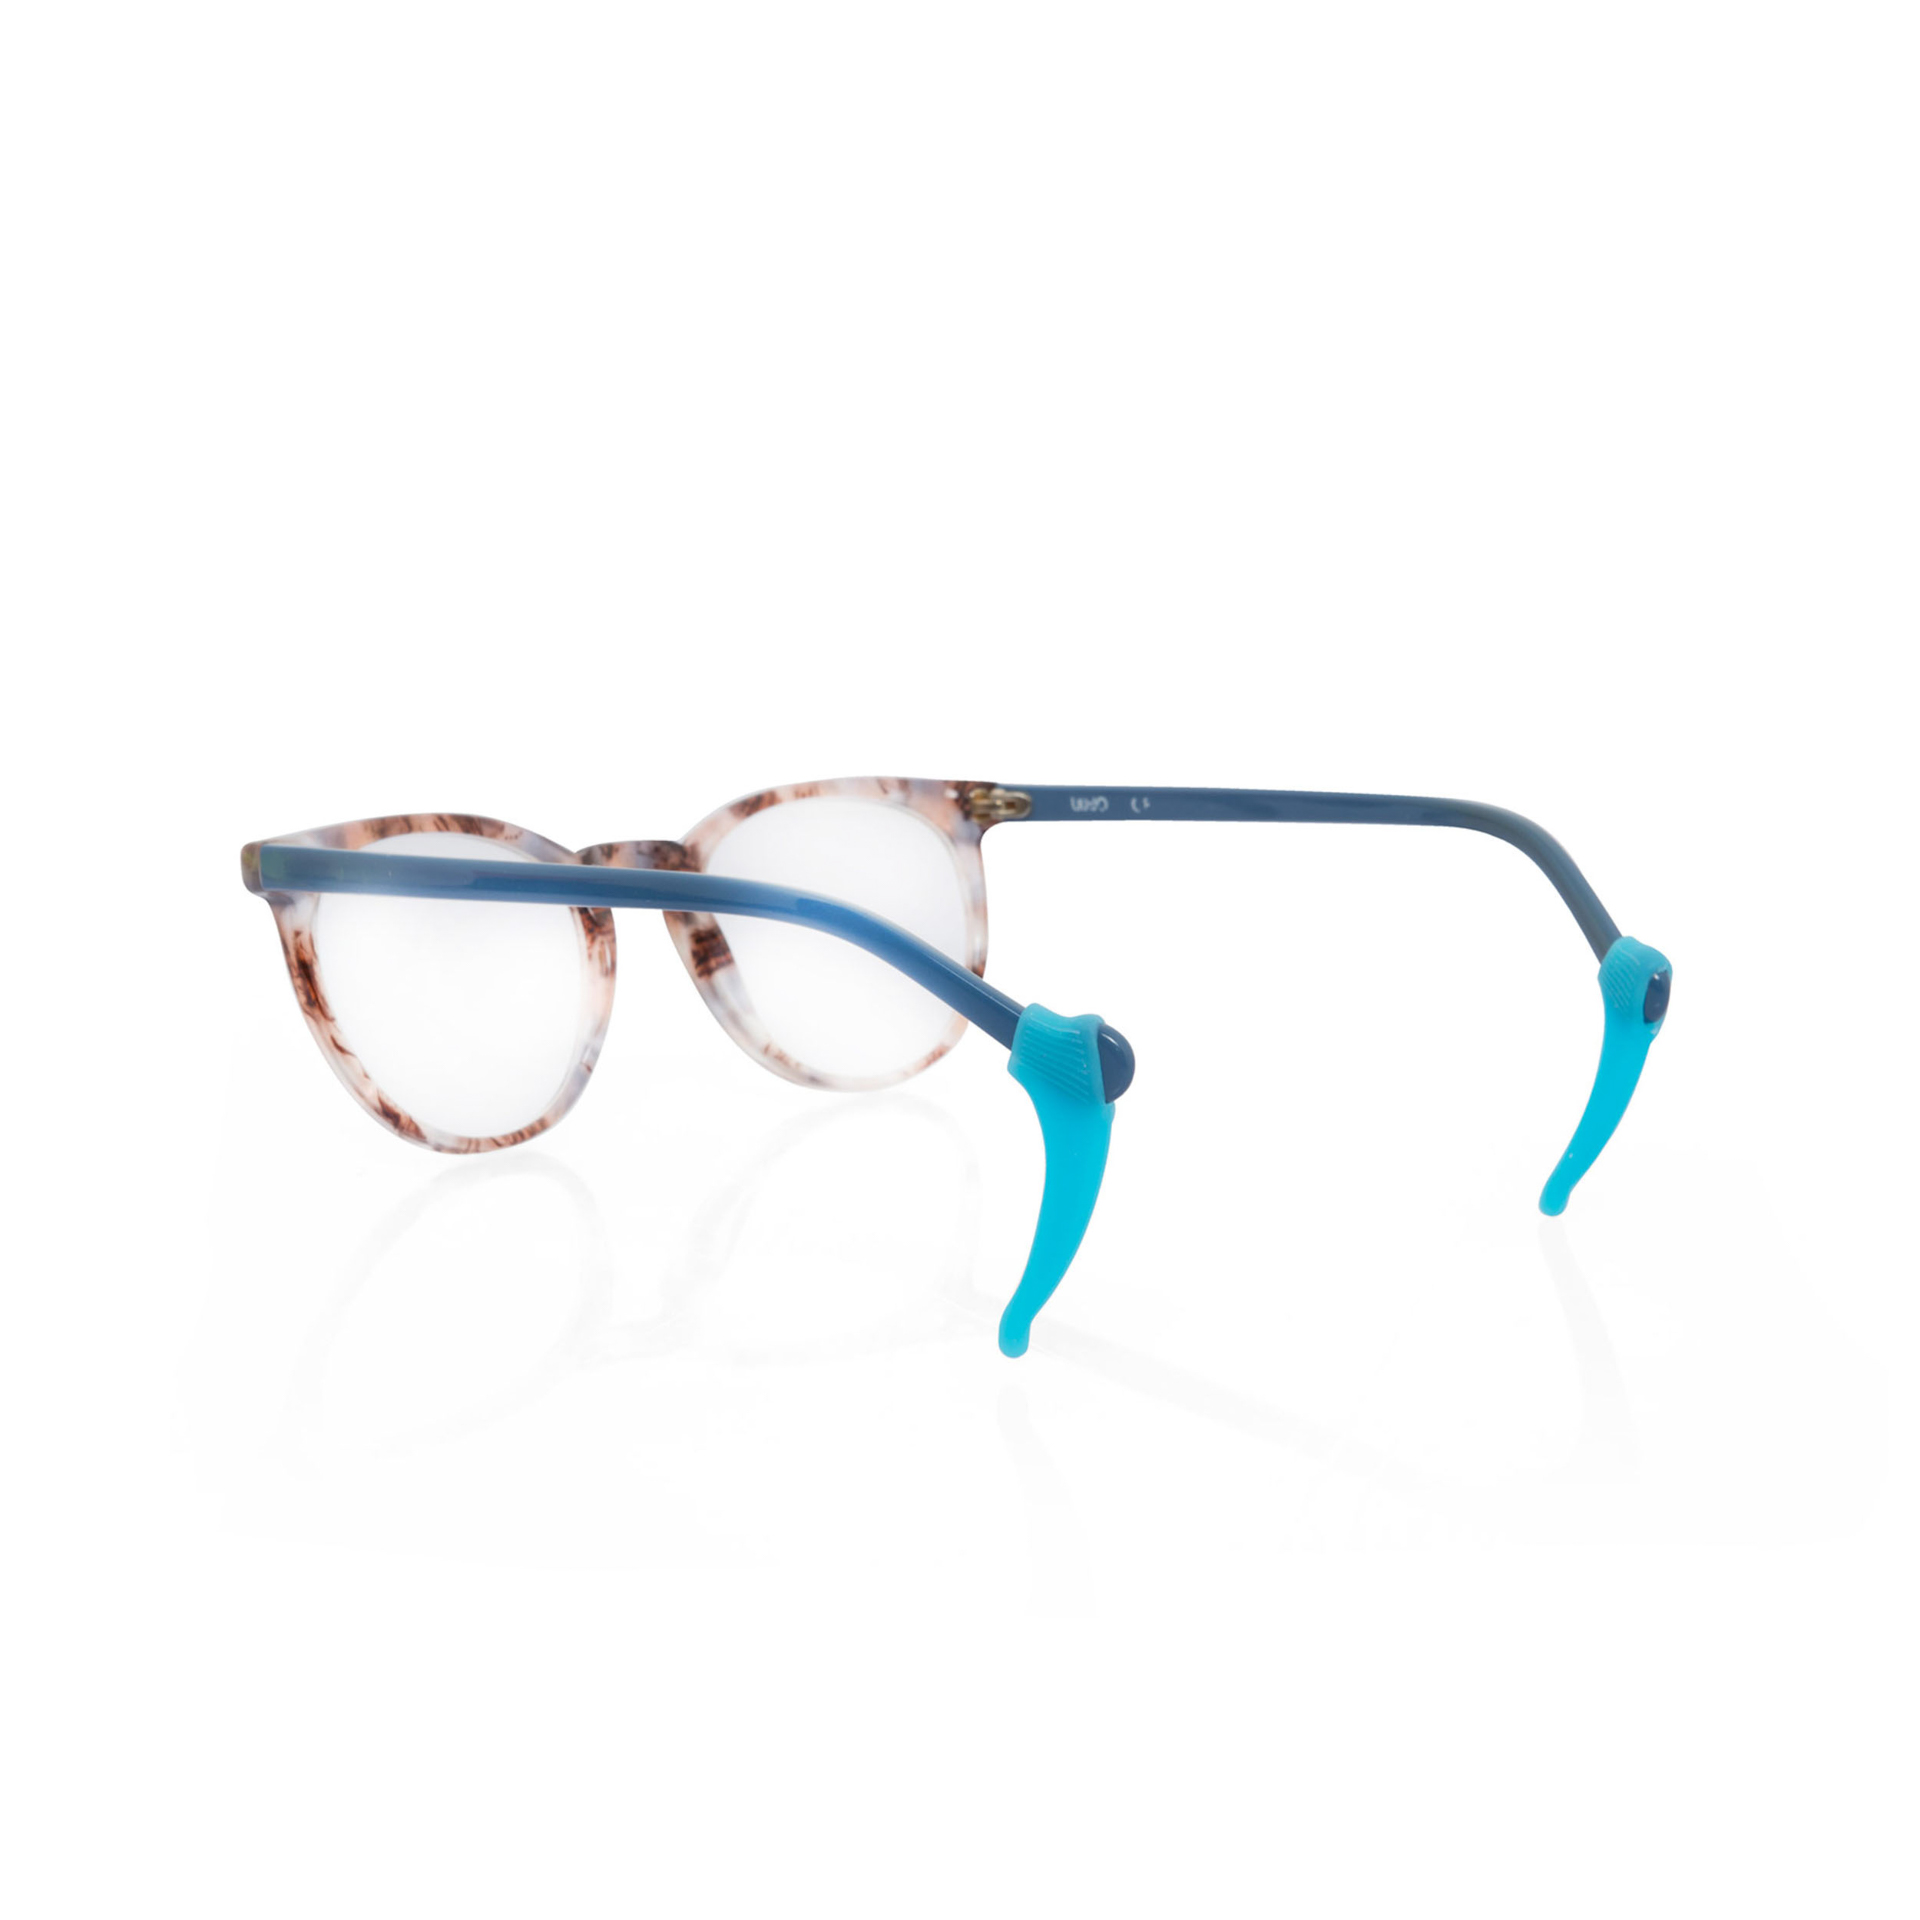 Ferma occhiali in silicone  set da 6 pz, , large